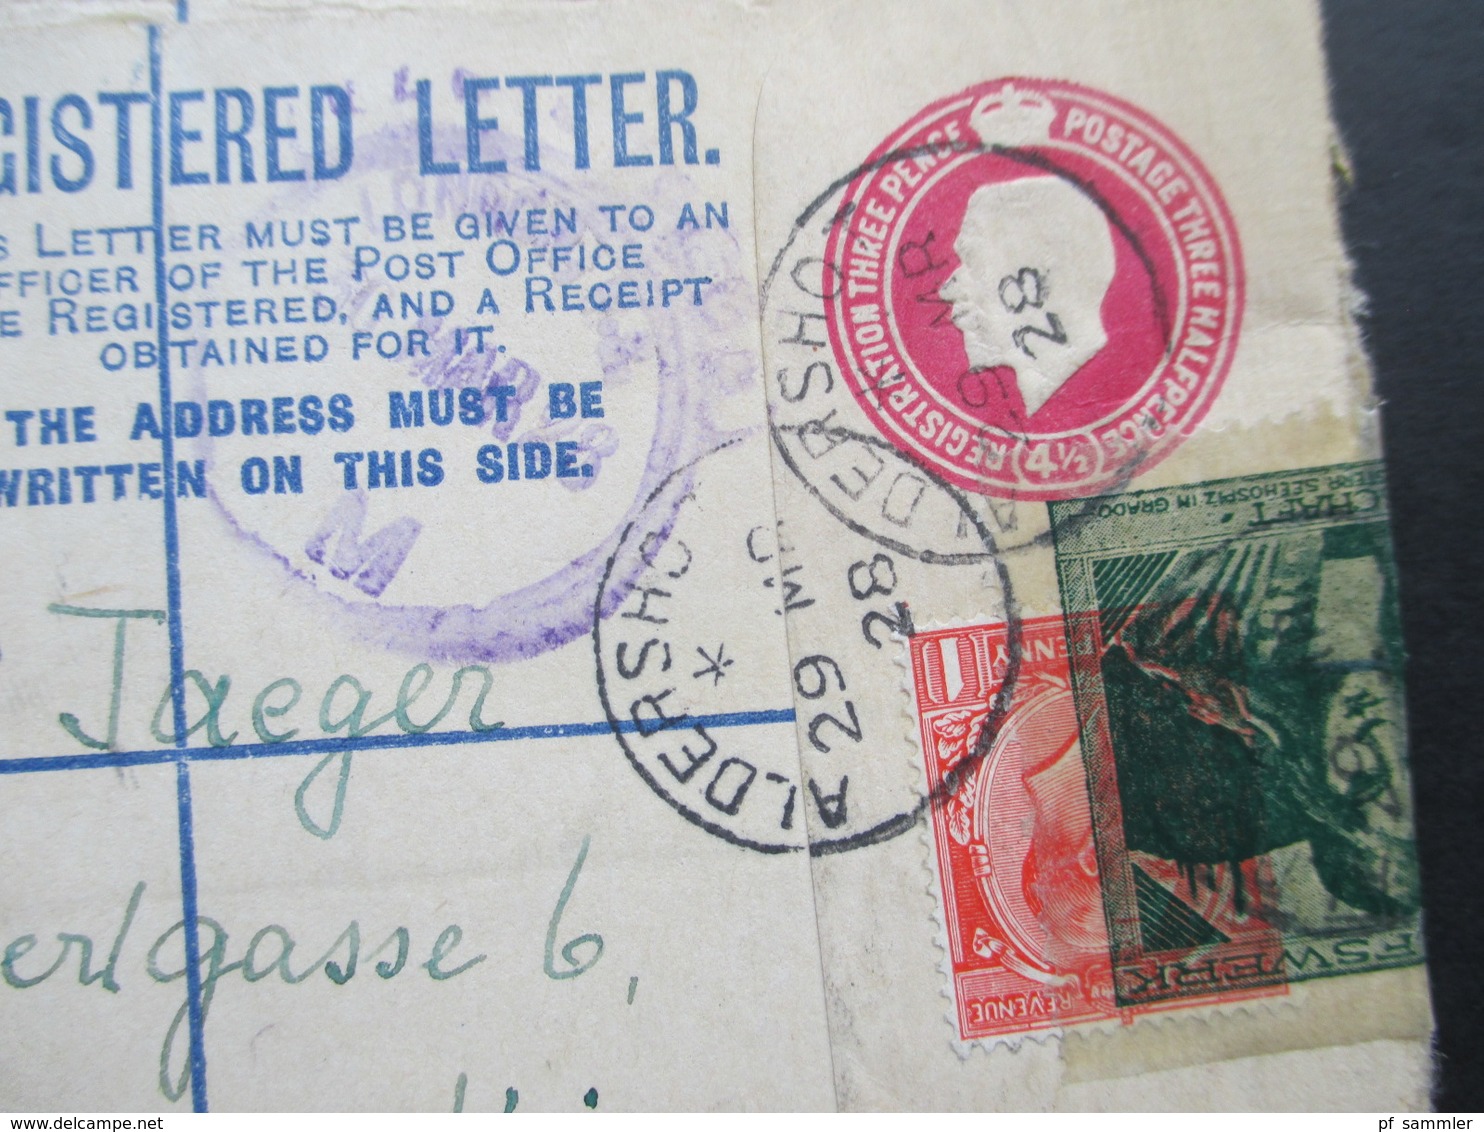 GB 1928 Registered Letter Aldershot No. 932 Nach Wien. Zusatzfrankatur Mit Vignette überklebt Kinderhilswerk Grado - Briefe U. Dokumente